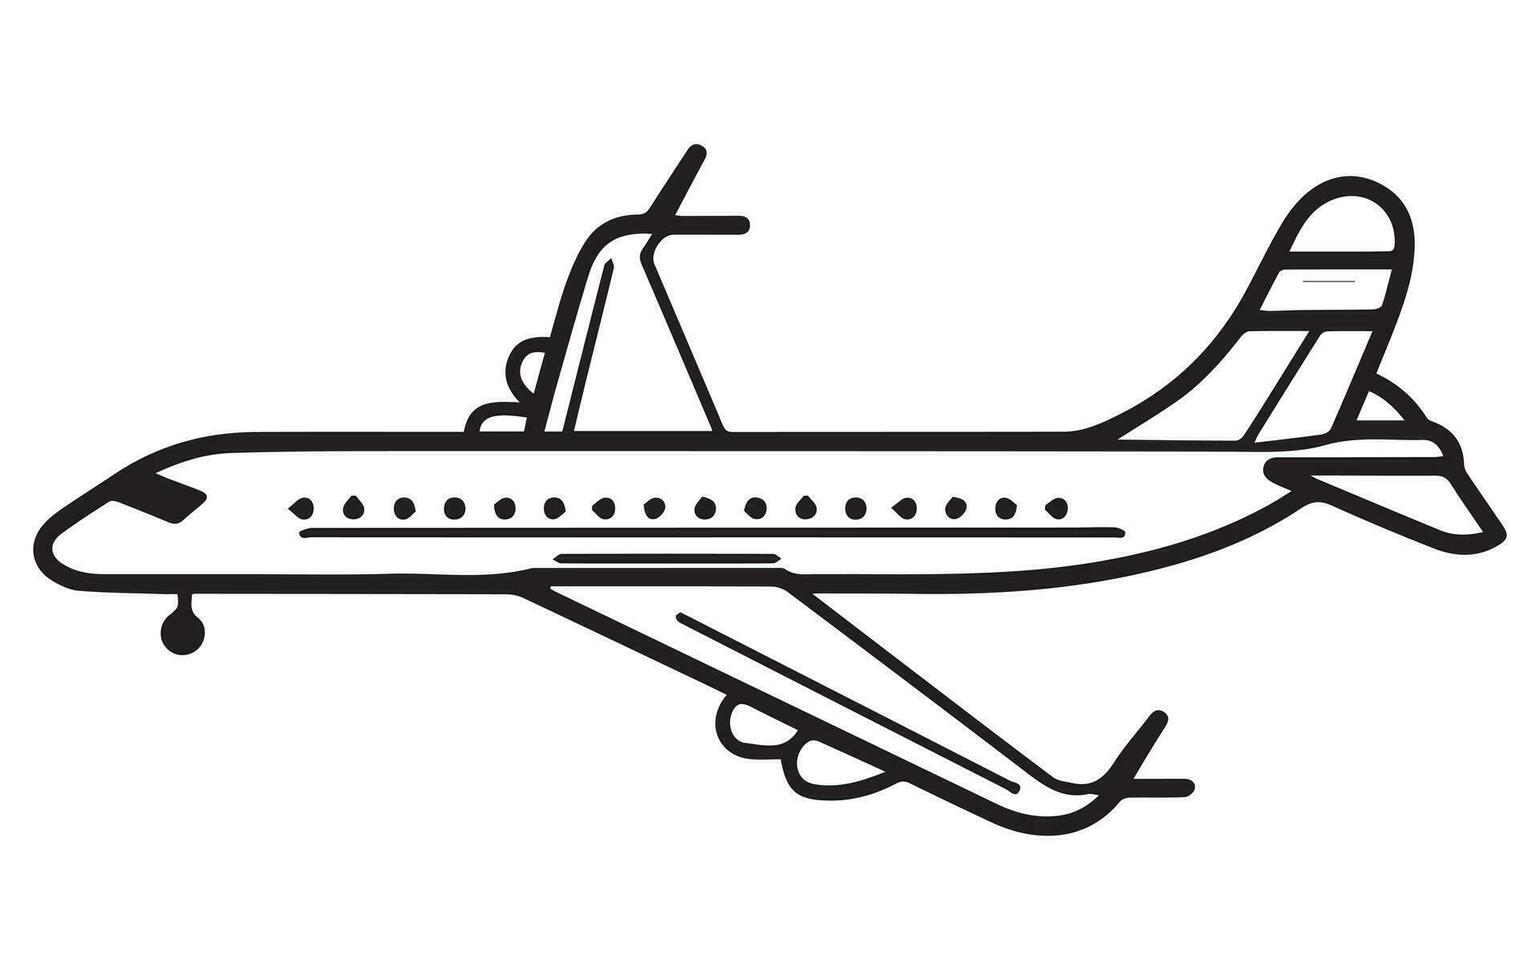 vliegtuig. bewerkbare schets schetsen van vliegtuig. voorraad vector illustratie, schets tekening vlak in een vlak stijl,